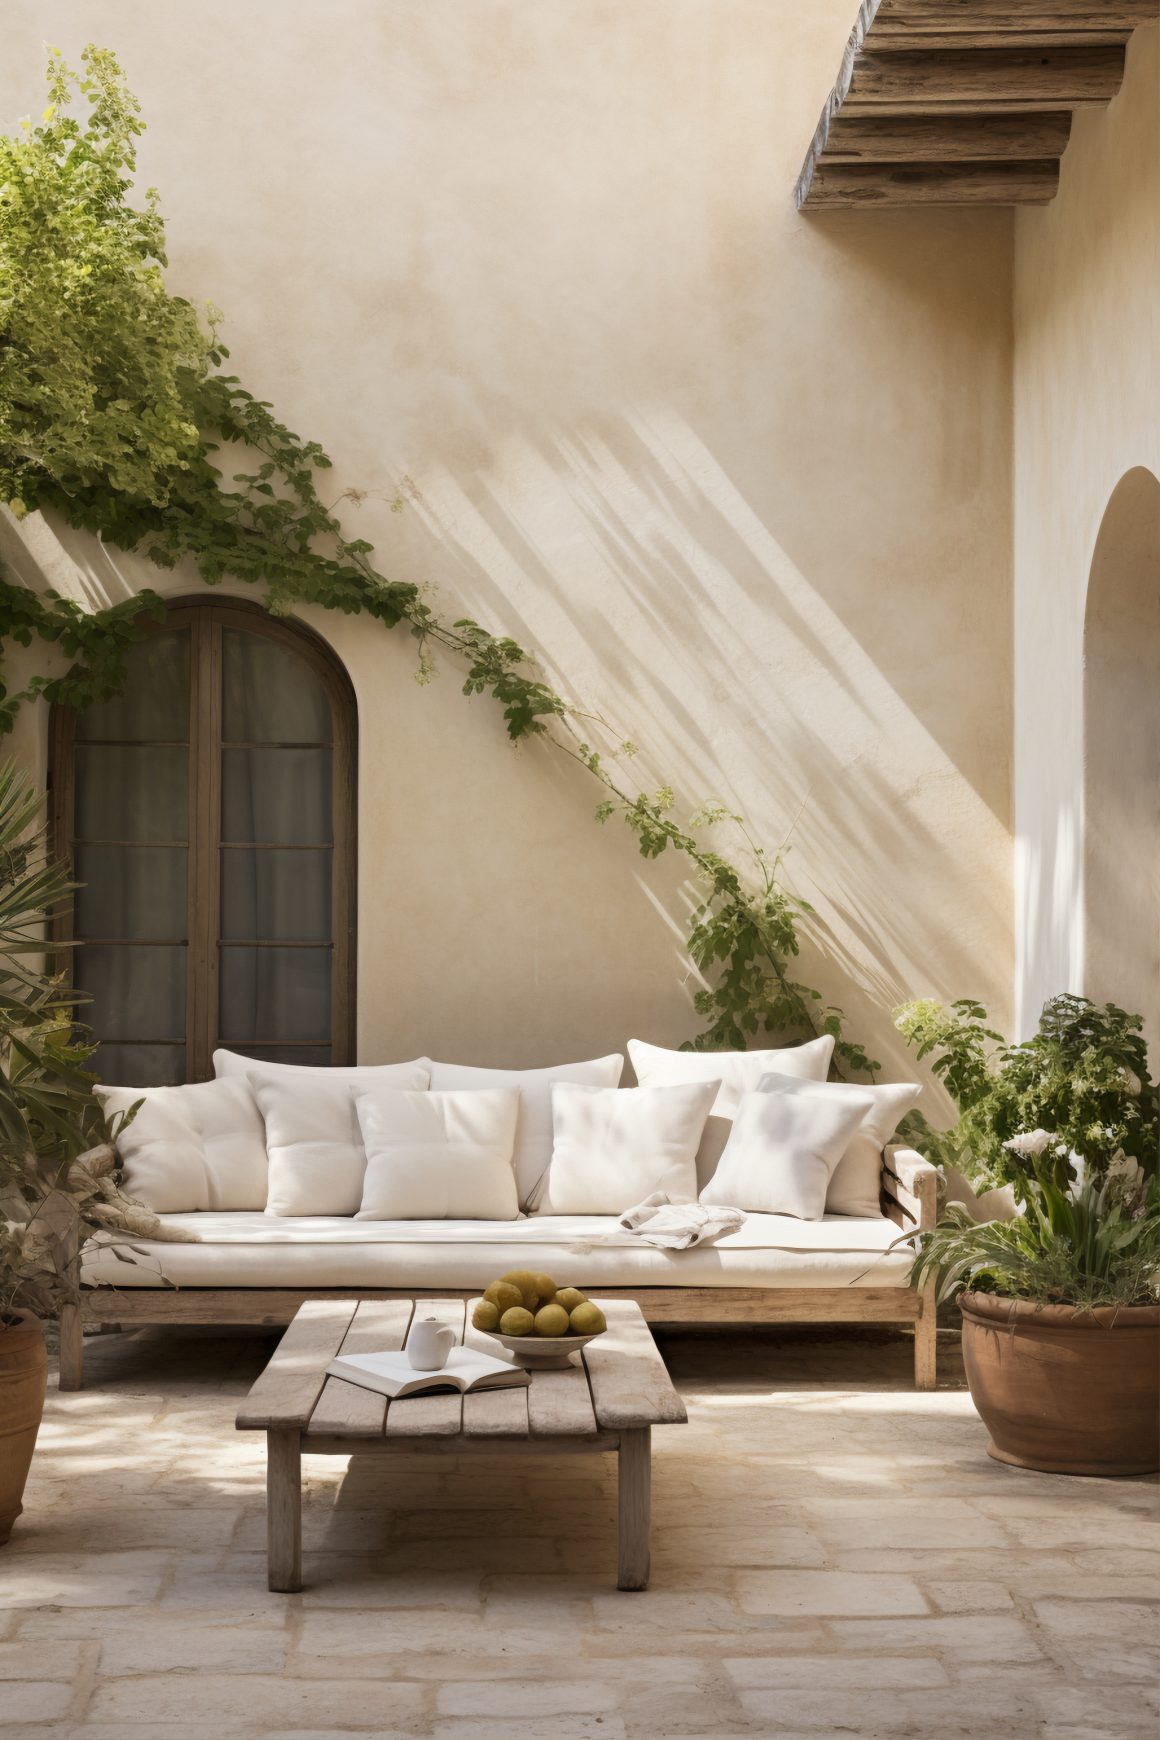 Couleur pour veranda beige avec un canapé blanc, des coussins décoratifs et des plantes vertes